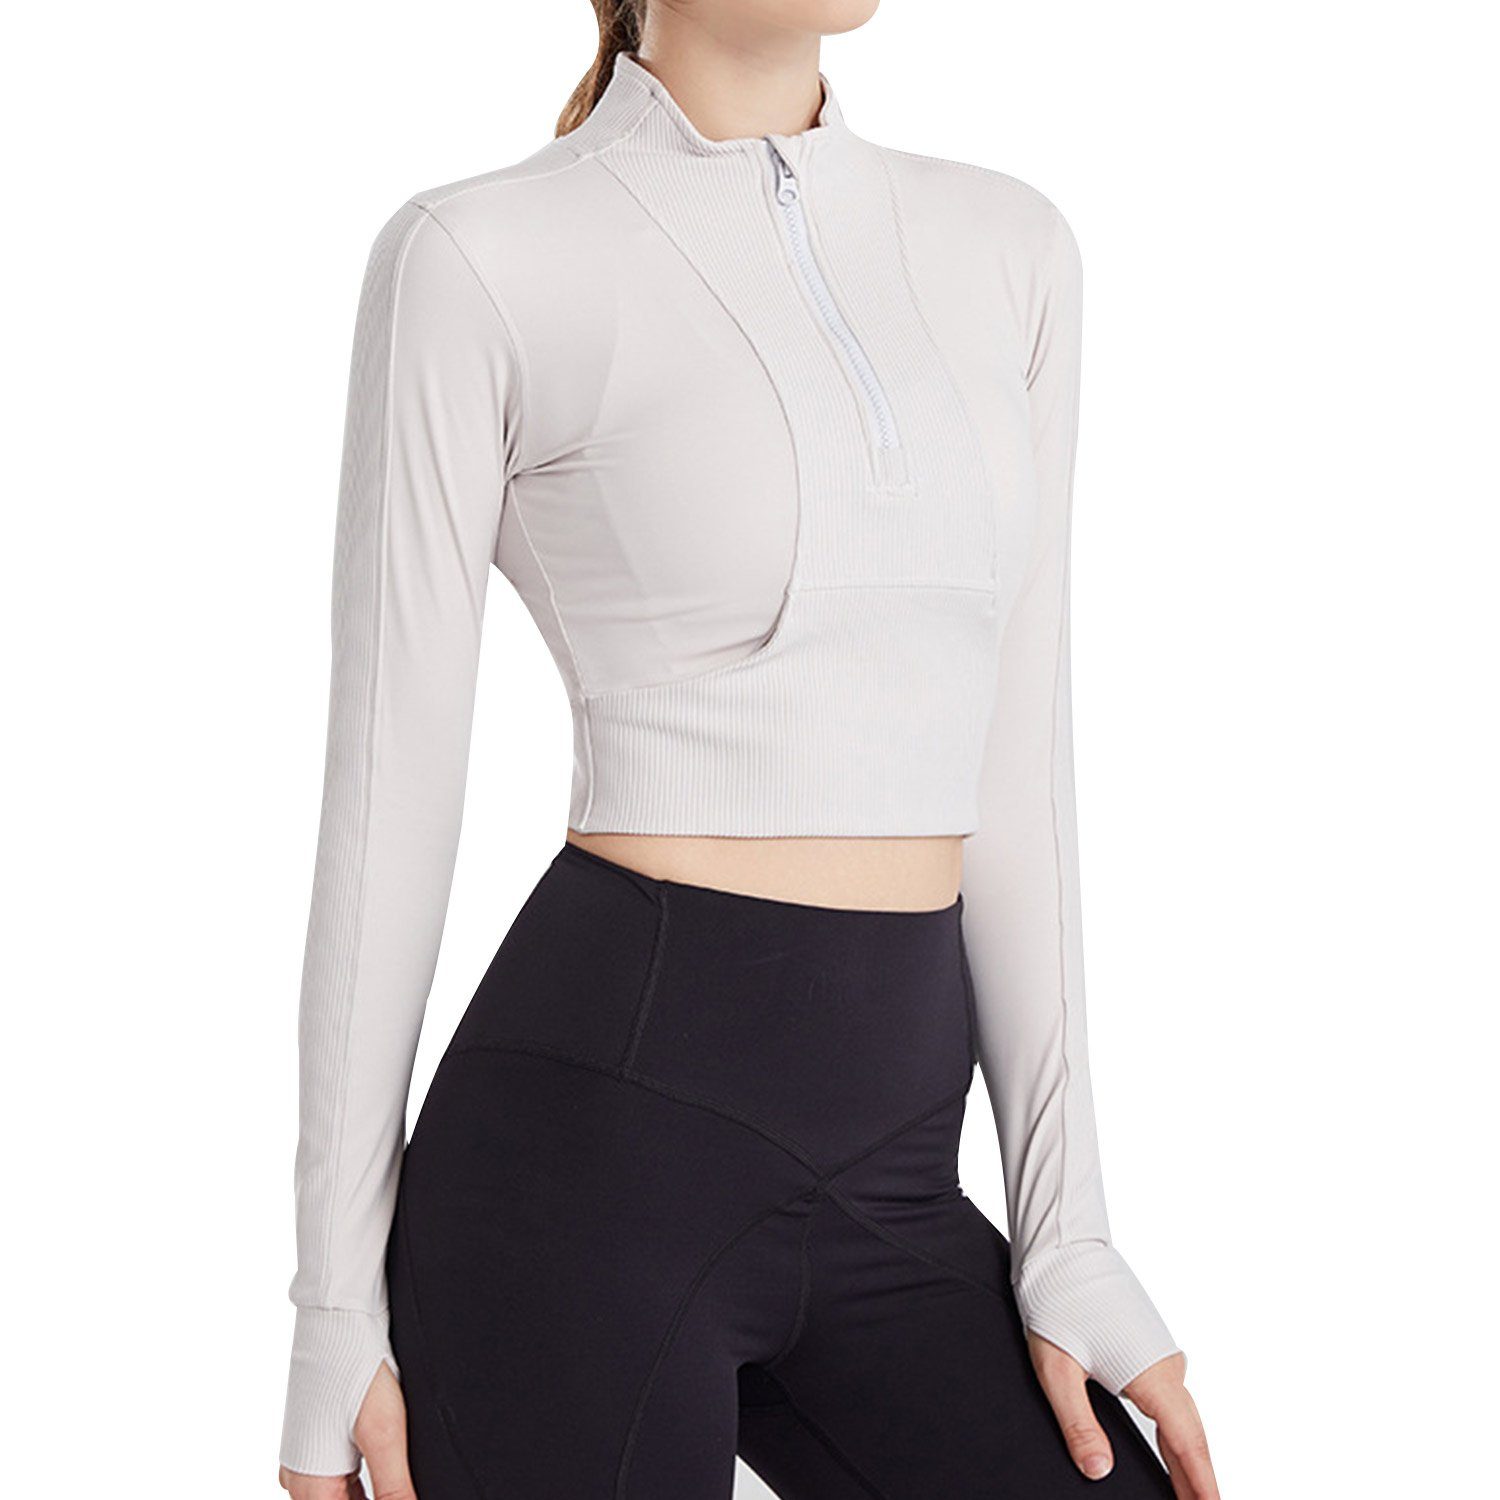 MAGICSHE Funktionsshirt T-Shirt Damen Fitness Top Sweatshirt Leicht Halber Reißverschluss Brust Design Weiß | Funktionsshirts